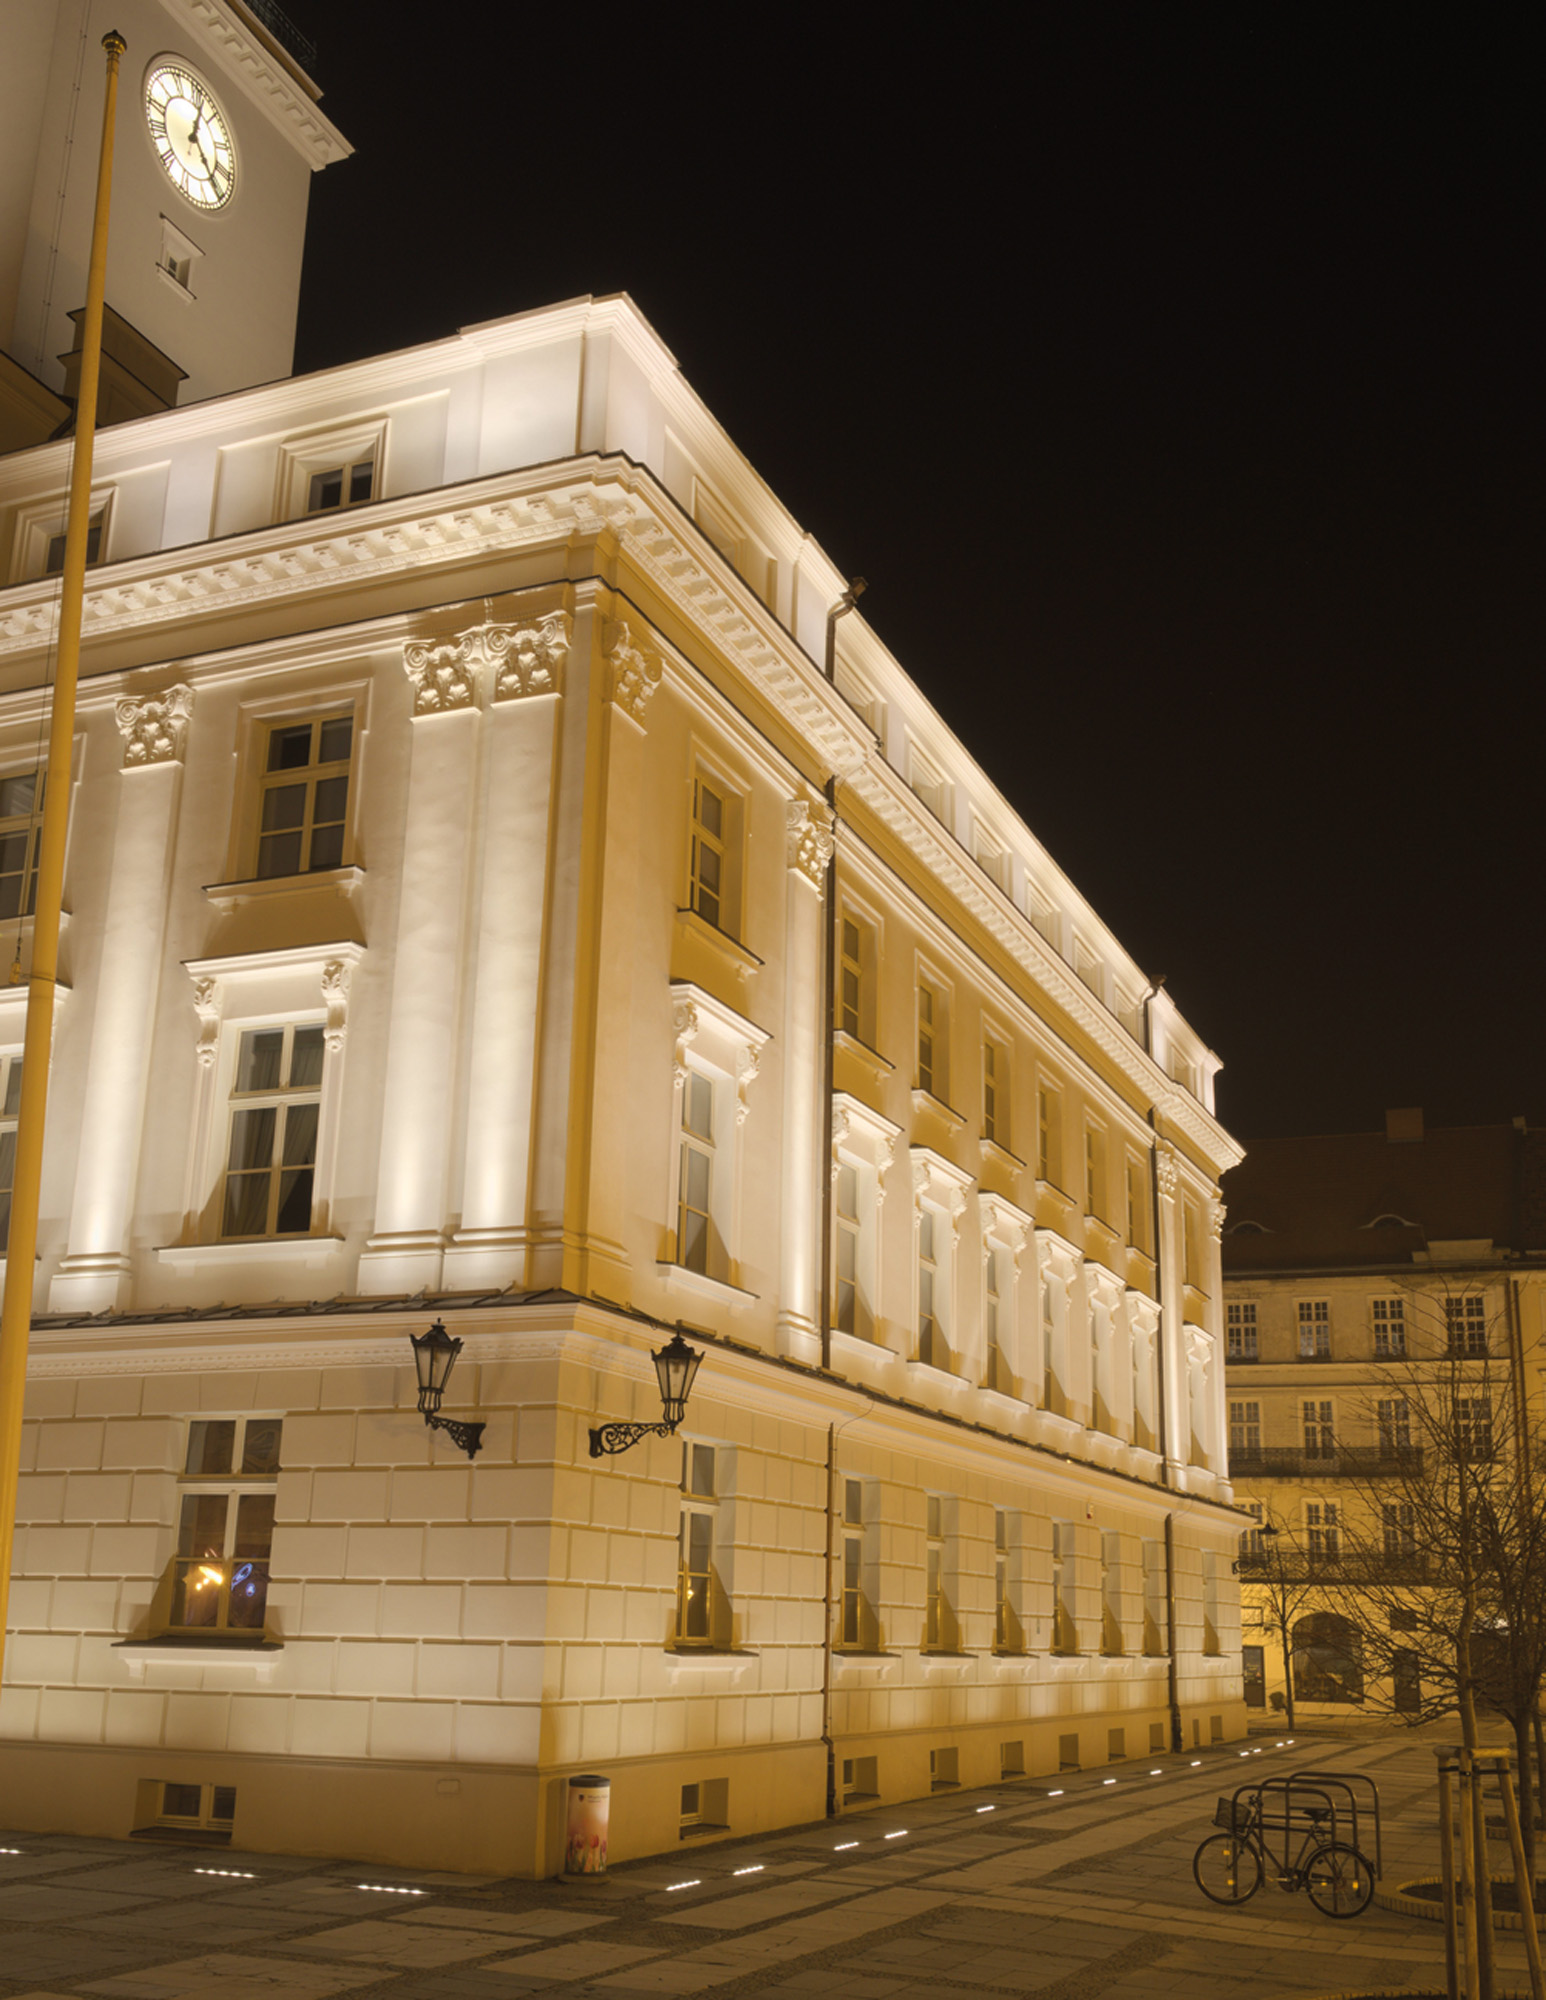 iluminacja elewacji zabytkowego budynku ratusza w Kaliszu nocą